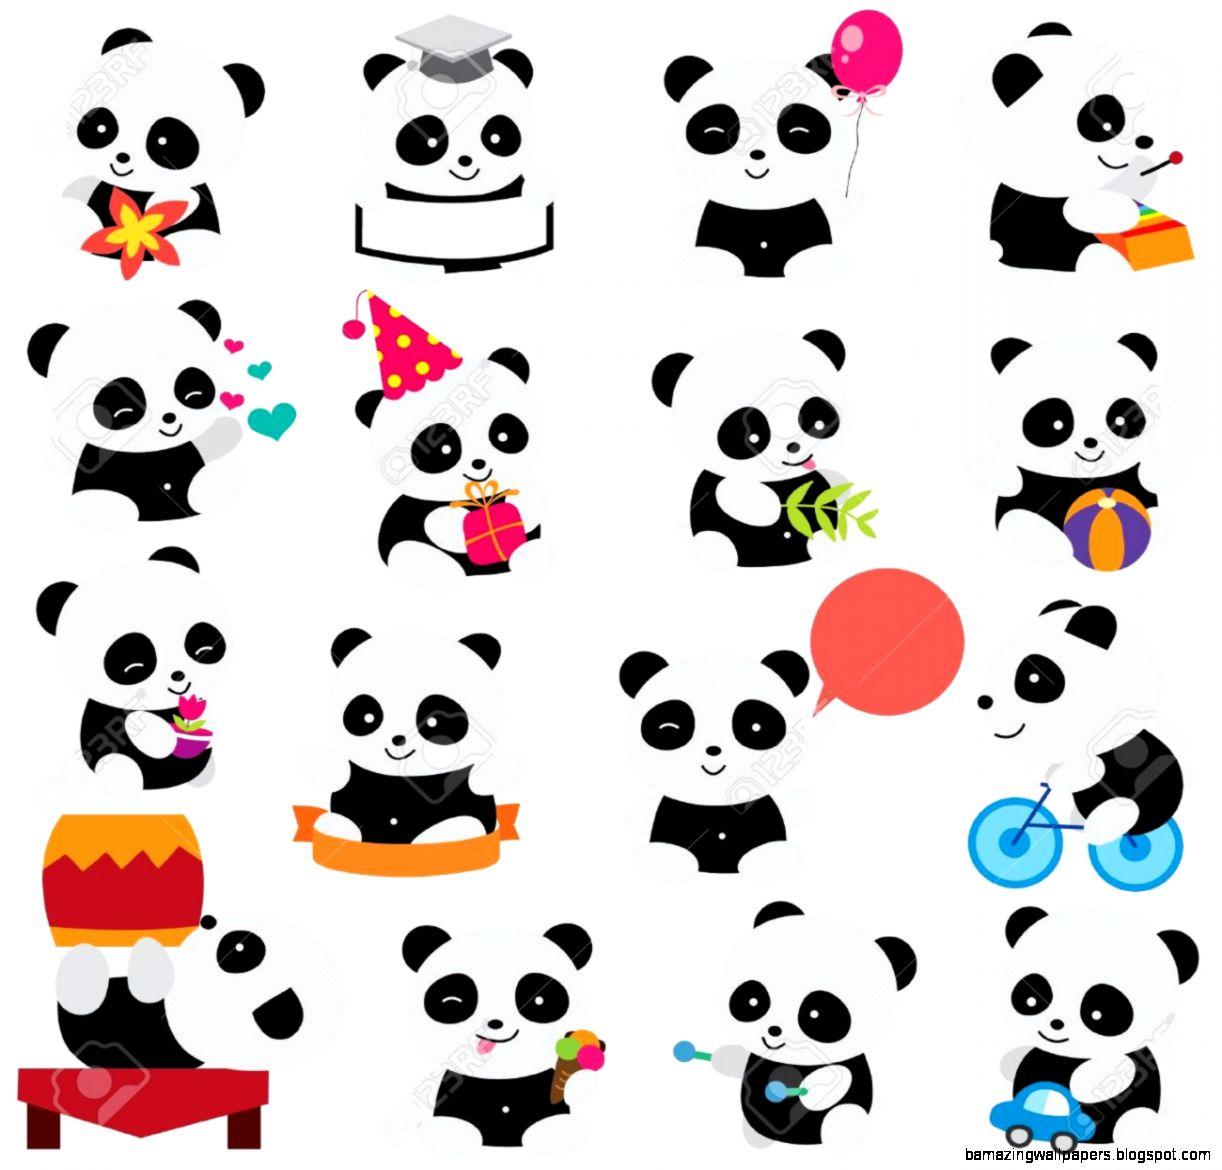 Wallpaper Panda Cute